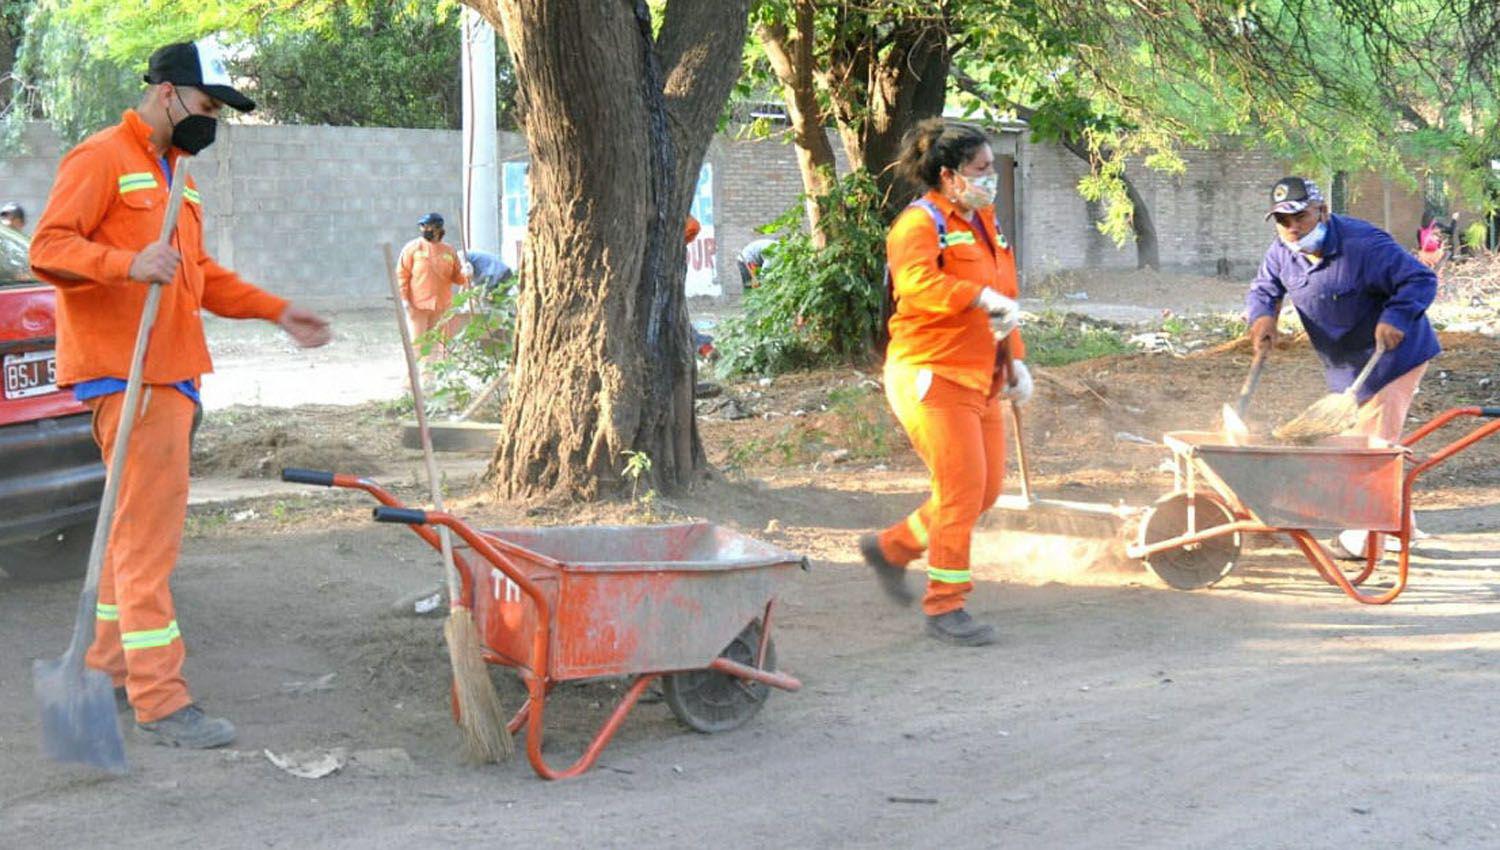 La comuna bandentildea trabaja en la limpieza y orden de la ciudad con la aplicacioacuten de tres programas